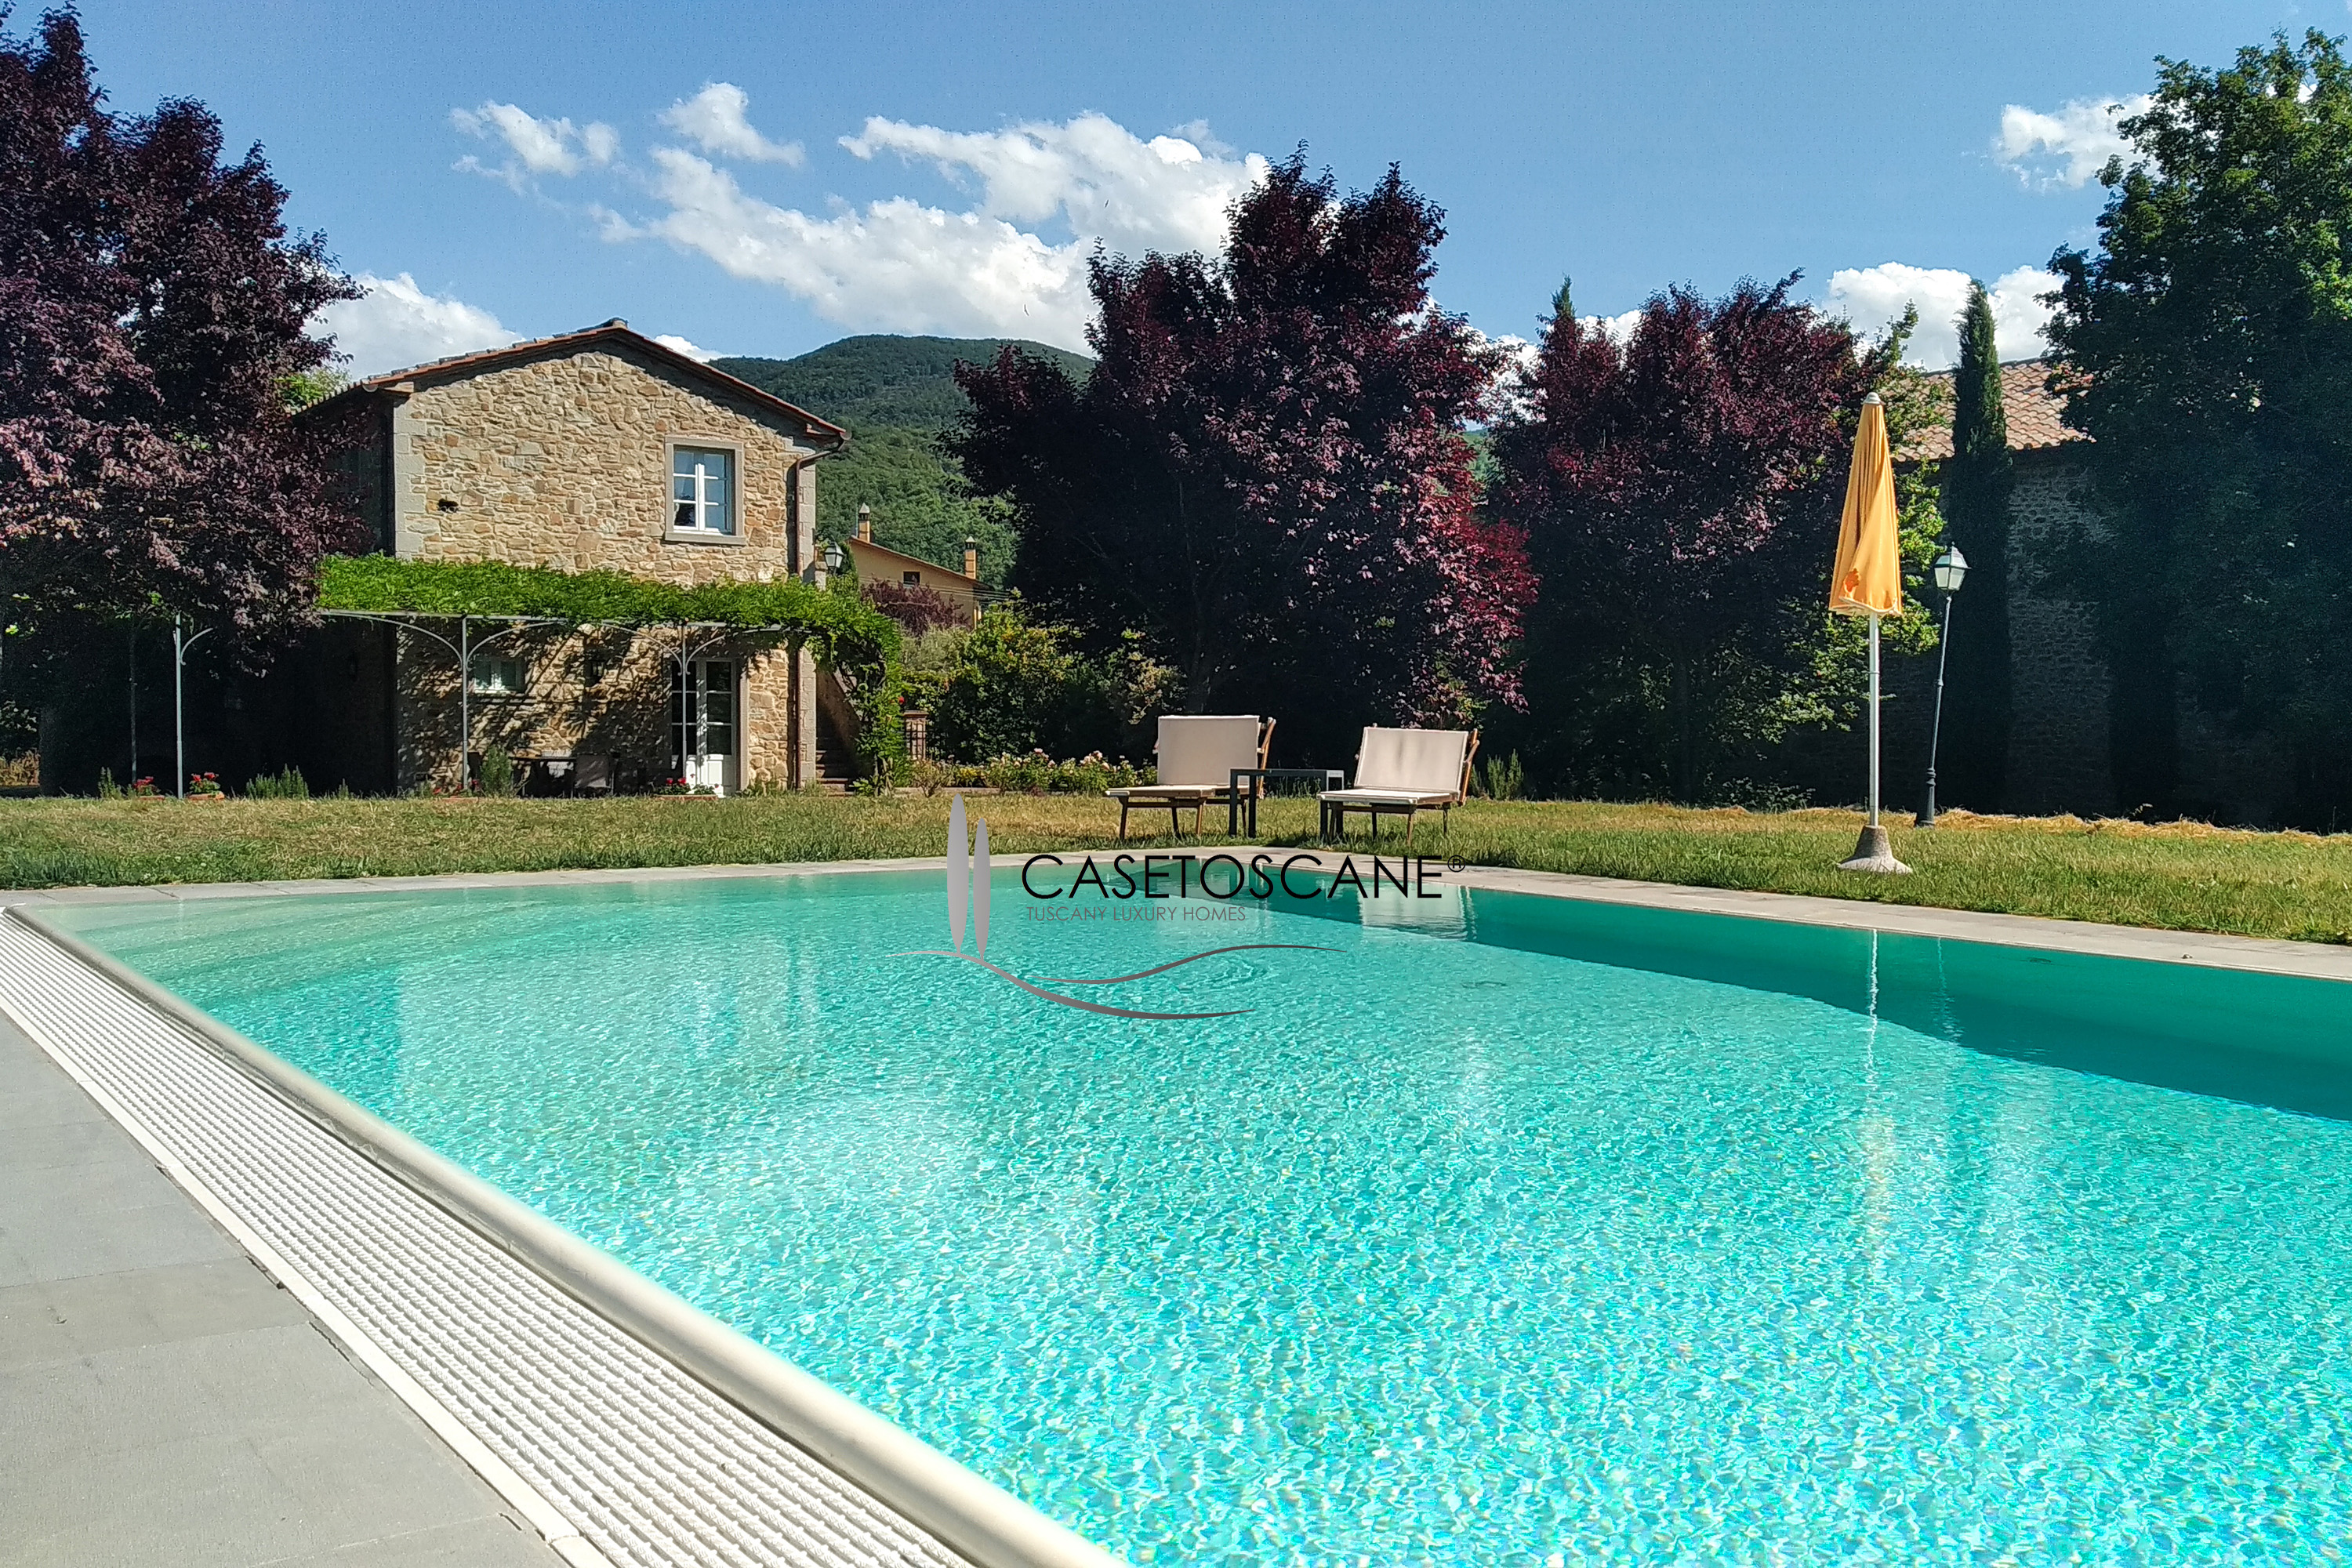 2740 - Casale in pietra di recente realizzazione, mq.160 con parco e piscina a Cortona (AR) e possibile ampliamento